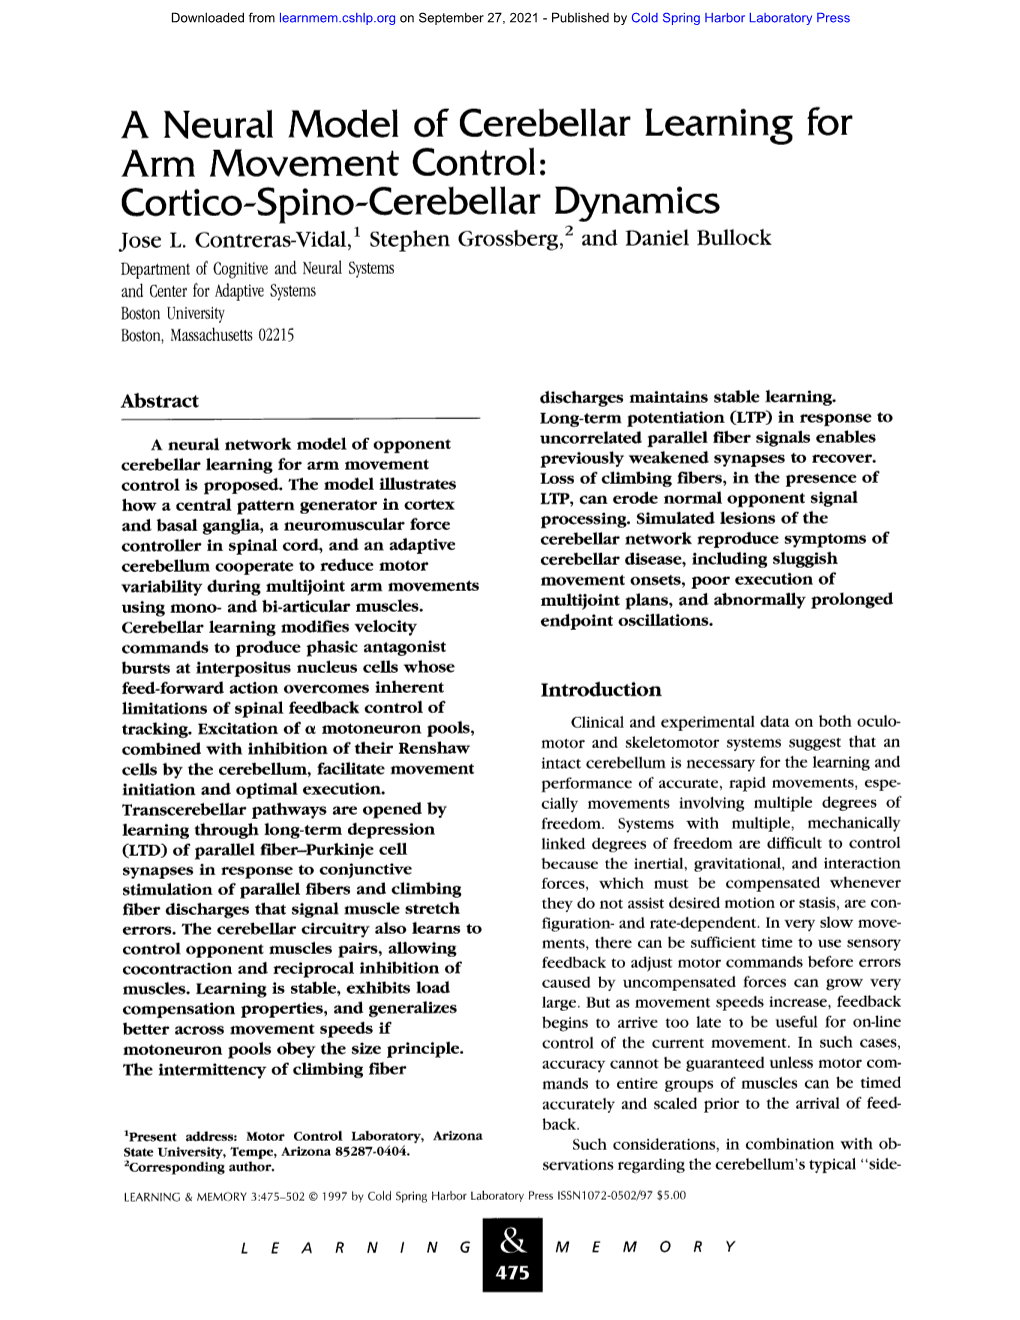 A Neural Model of Cerebellar Learning for Arm Movement Control: Cortico-Spino-Cerebellar Dynamics Jose L